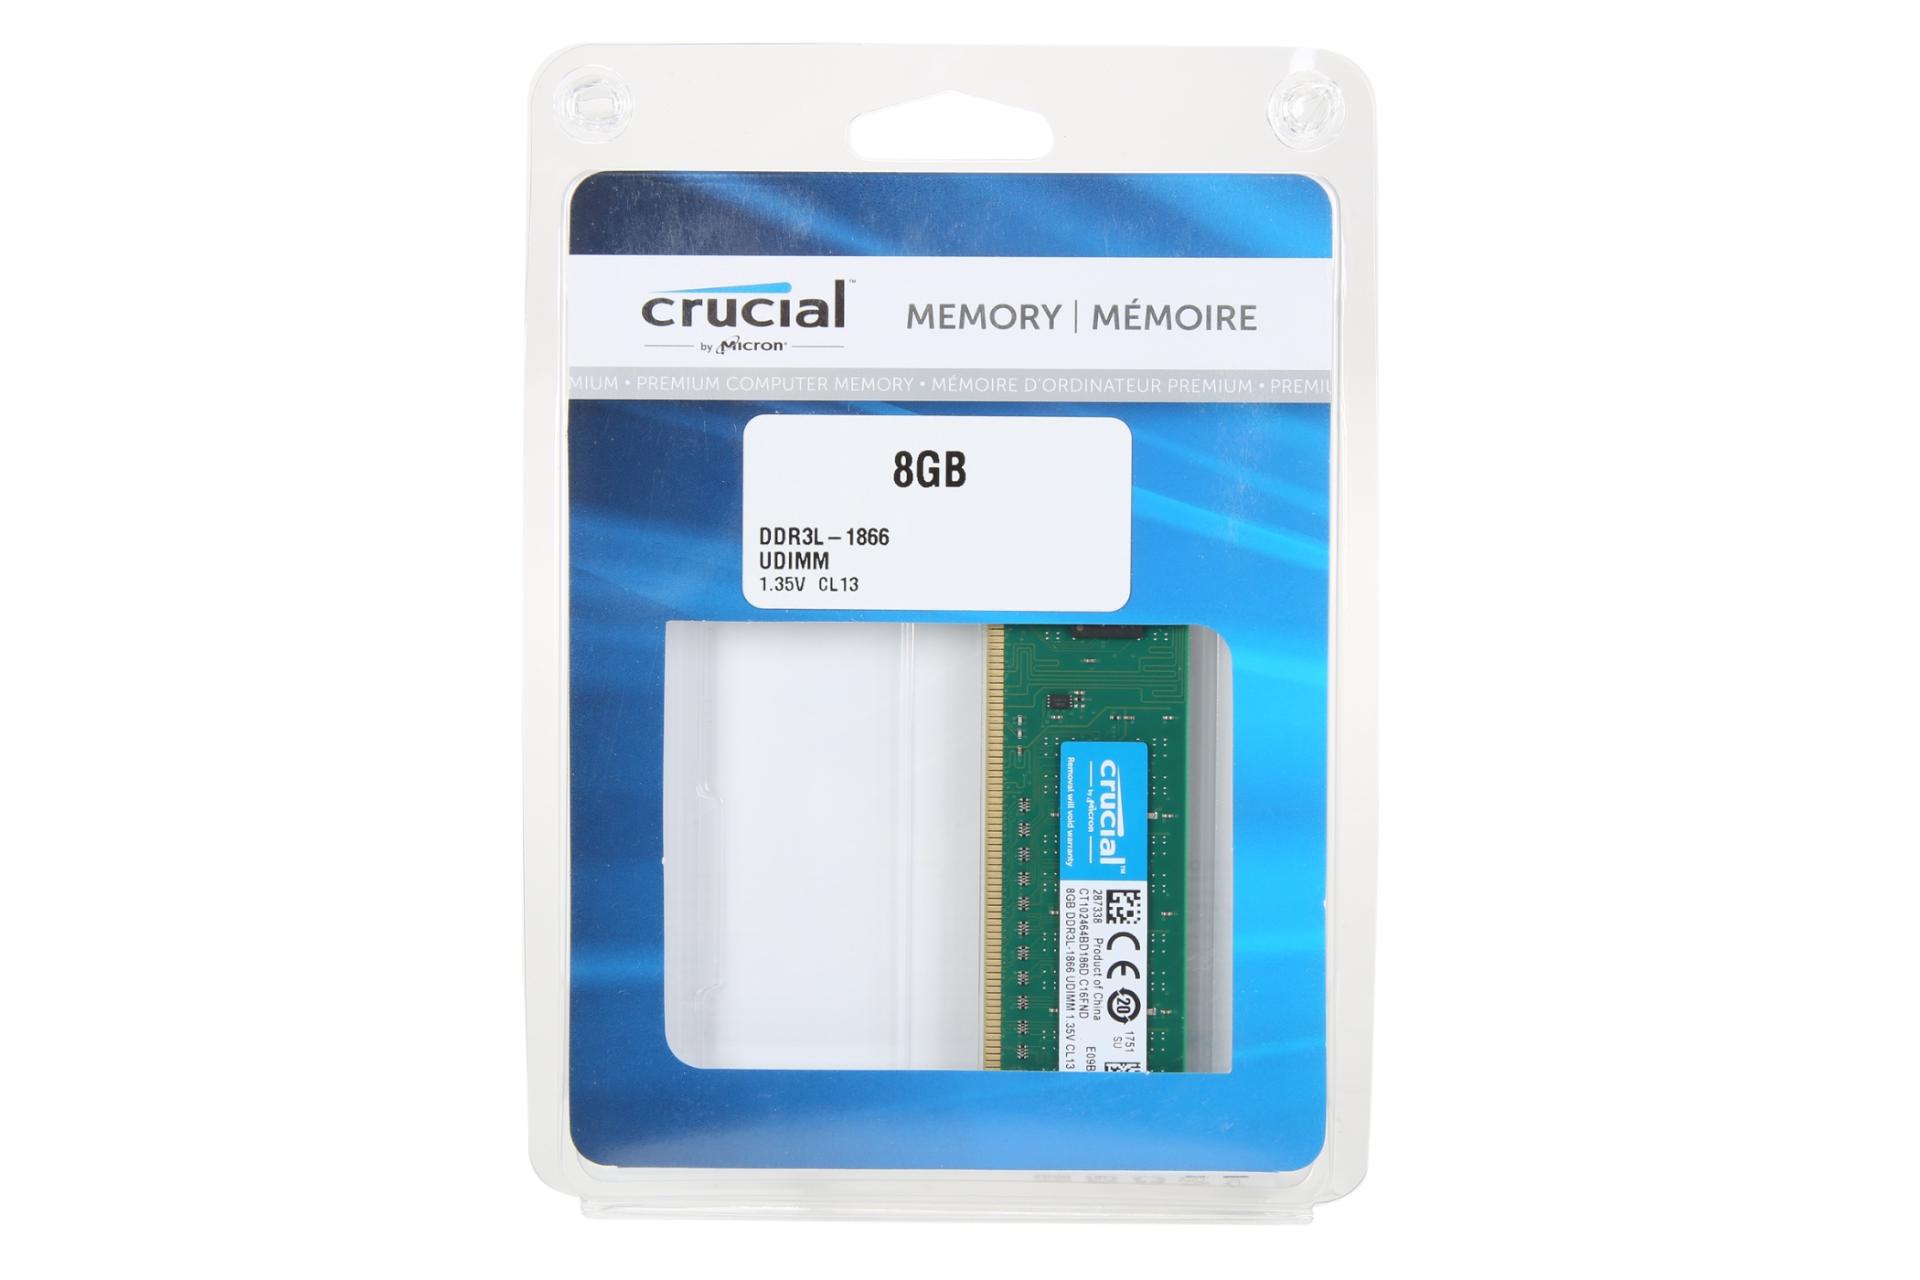 جعبه رم کروشیال Crucial CT102464BD186D 8GB DDR3L-1866 CL13 ظرفیت 8 گیگابایت از نوع DDR3L-1866